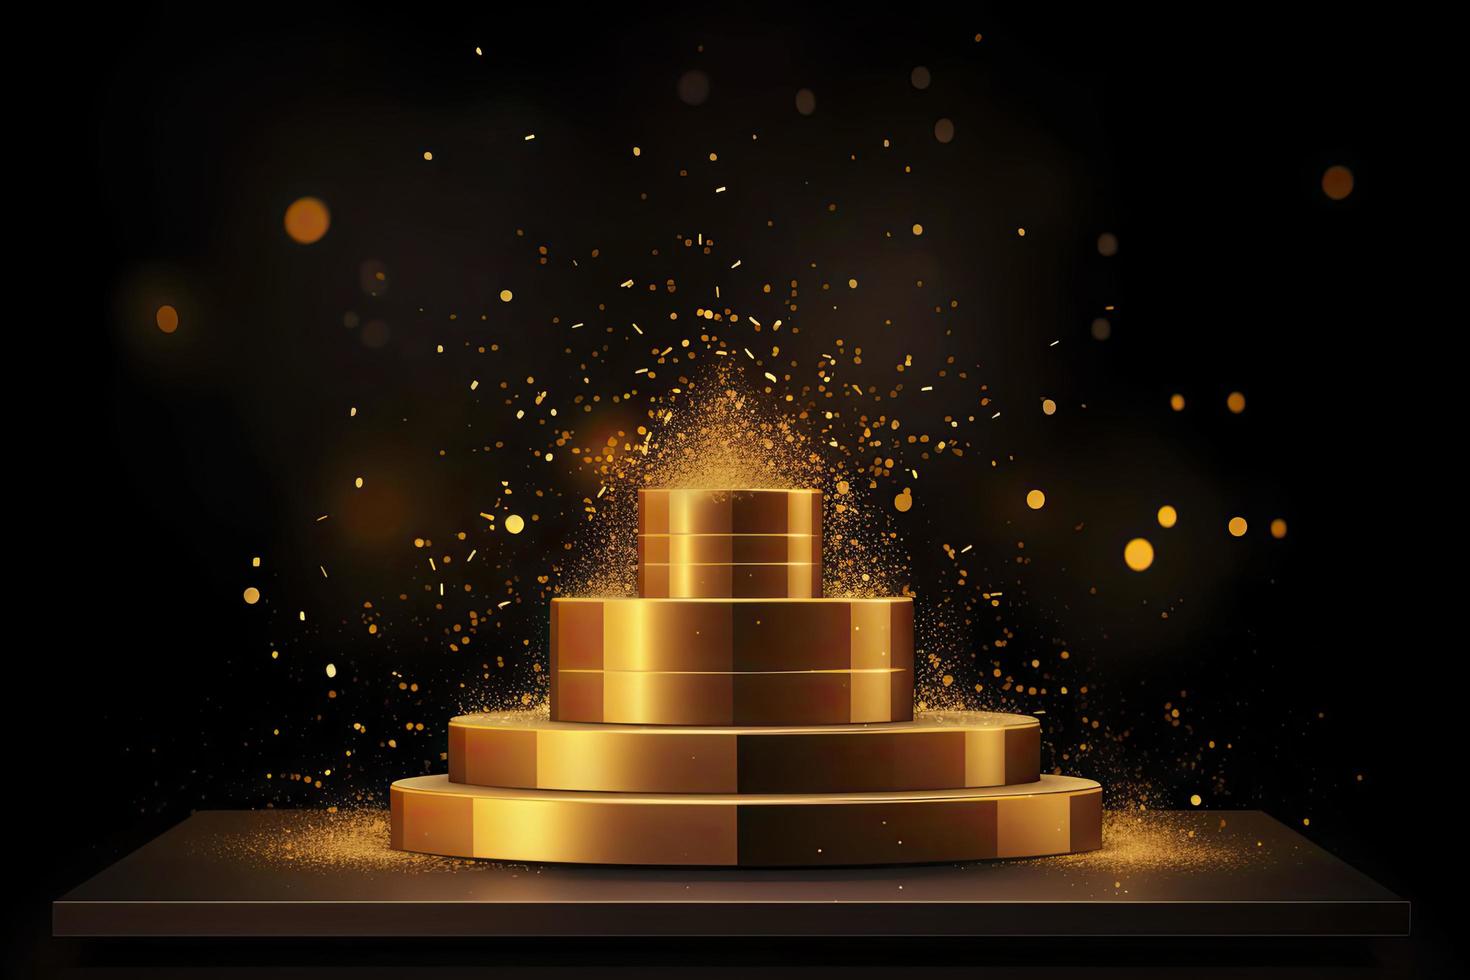 d'or podium avec une projecteur sur une foncé arrière-plan, chute d'or confettis, premier lieu, la célébrité et popularité photo